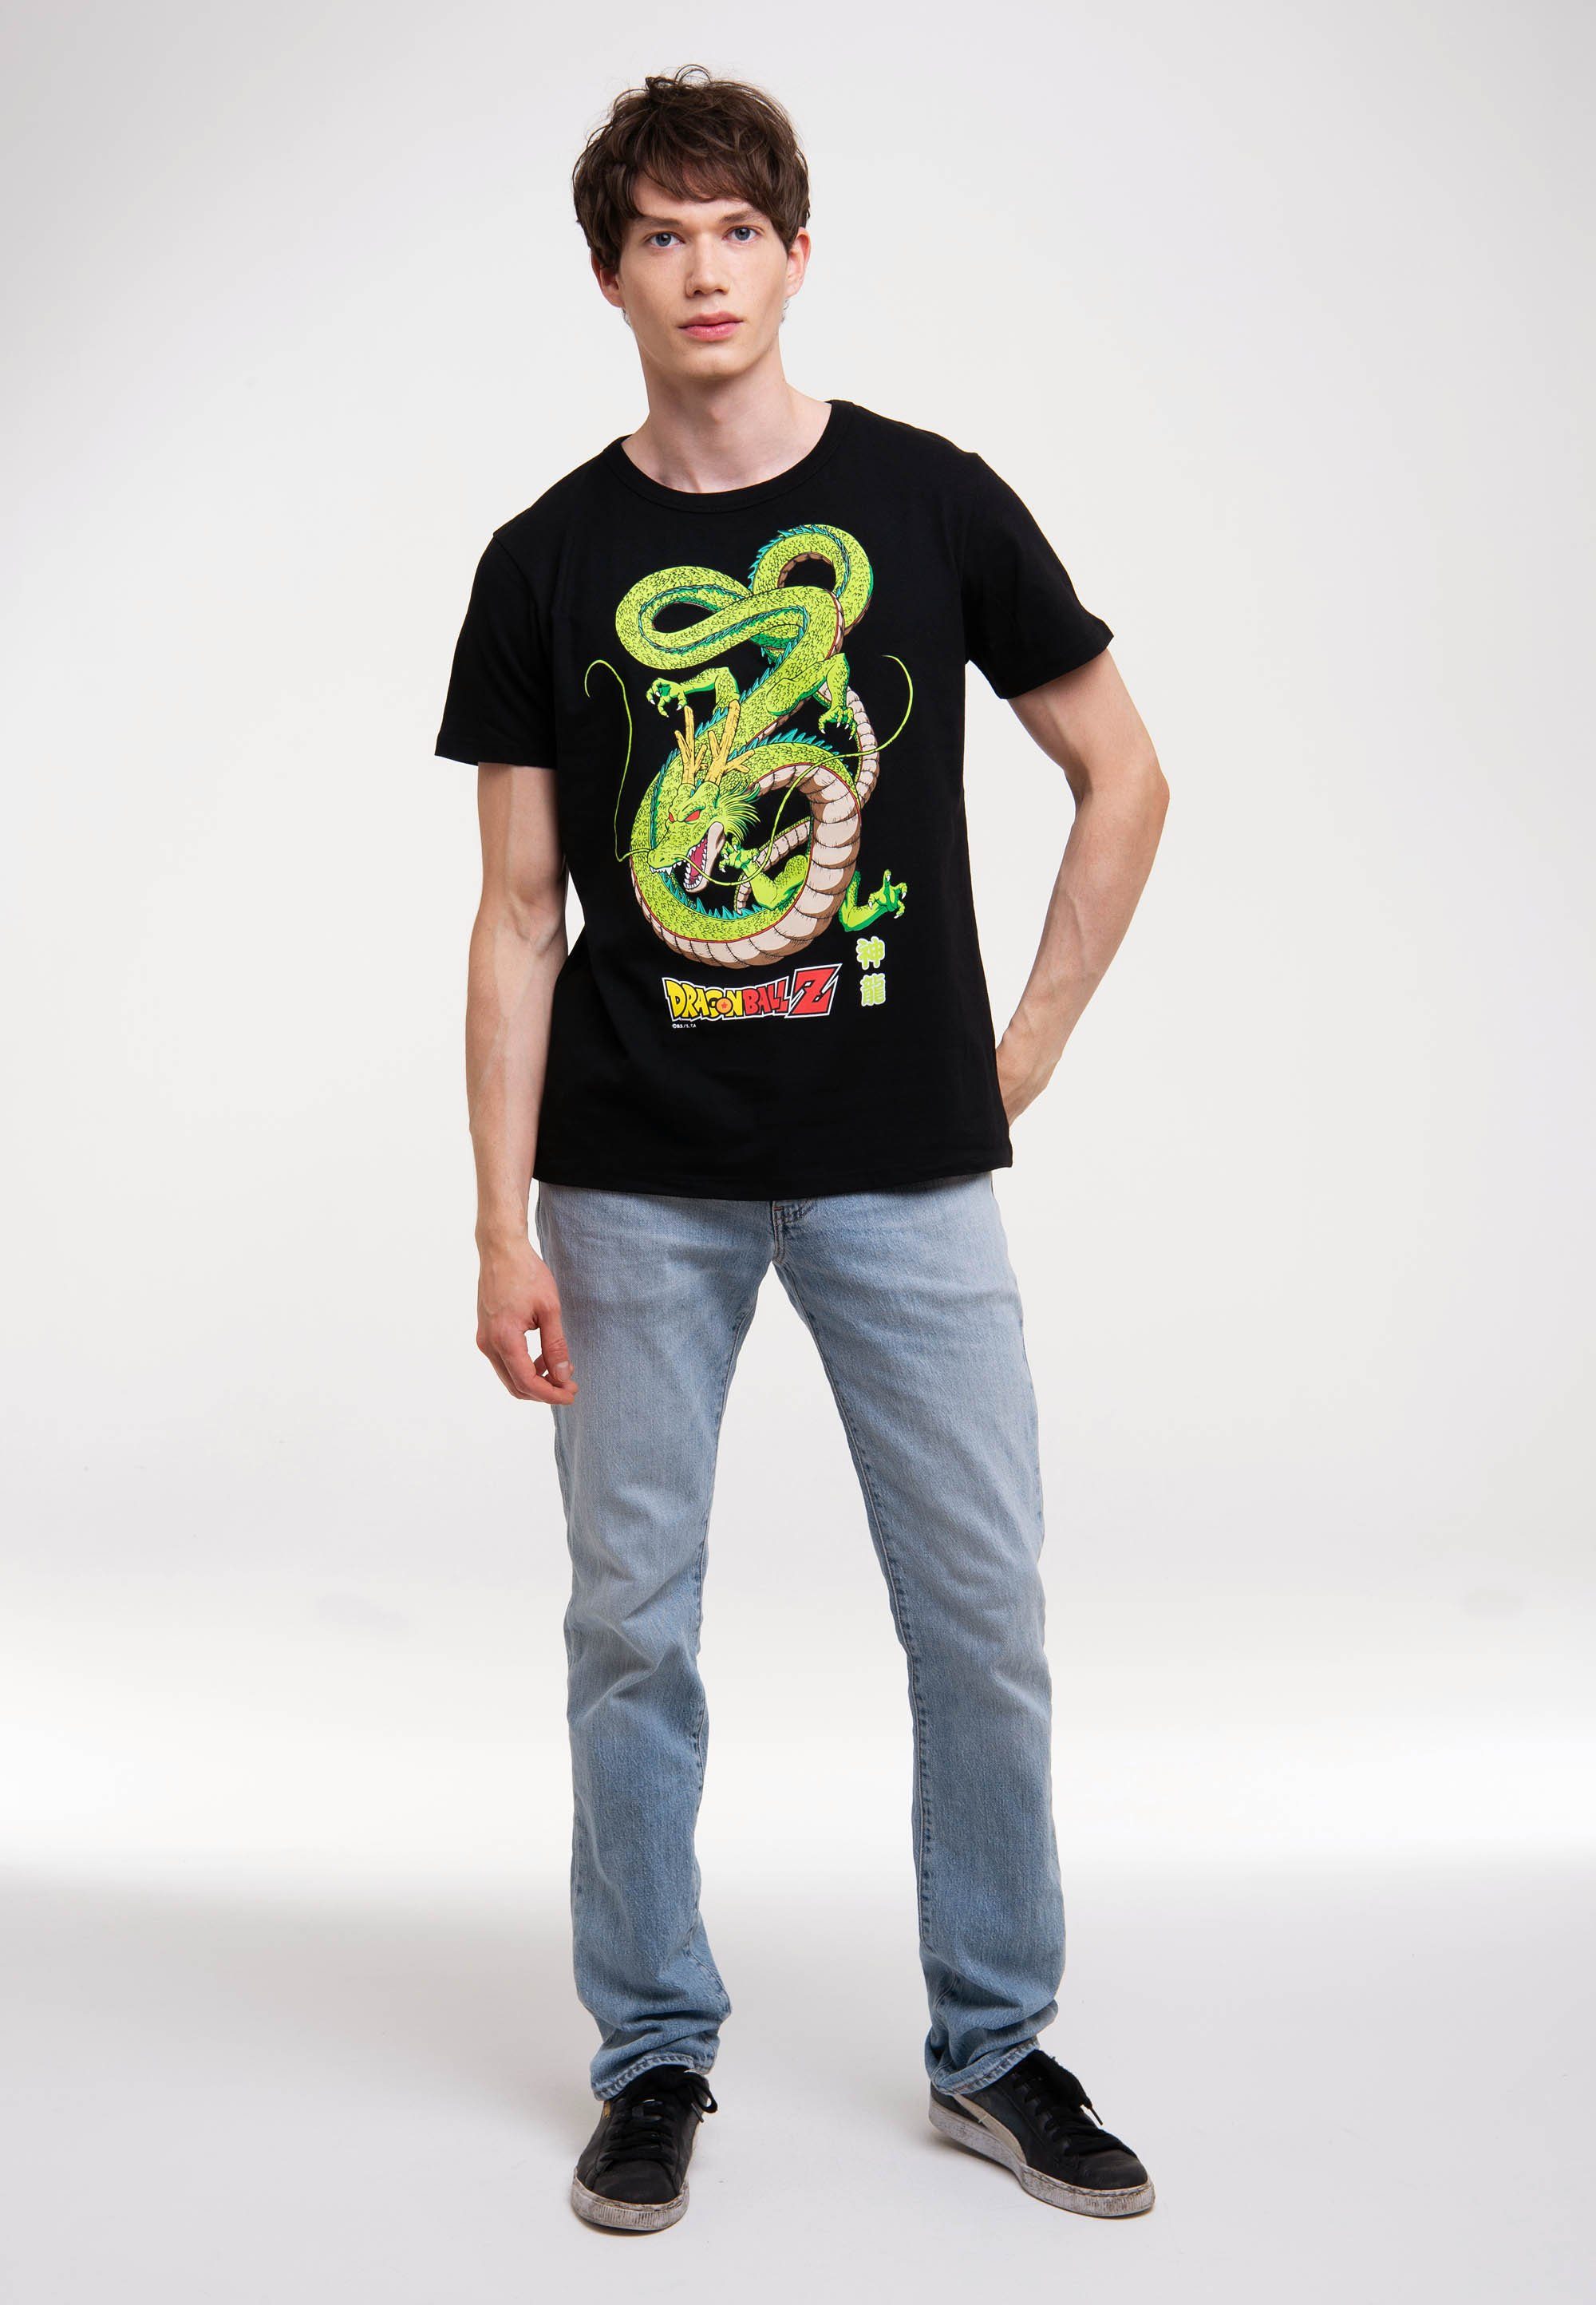 T-Shirt lizenziertem Dragonball LOGOSHIRT Shenlong Print Z - mit